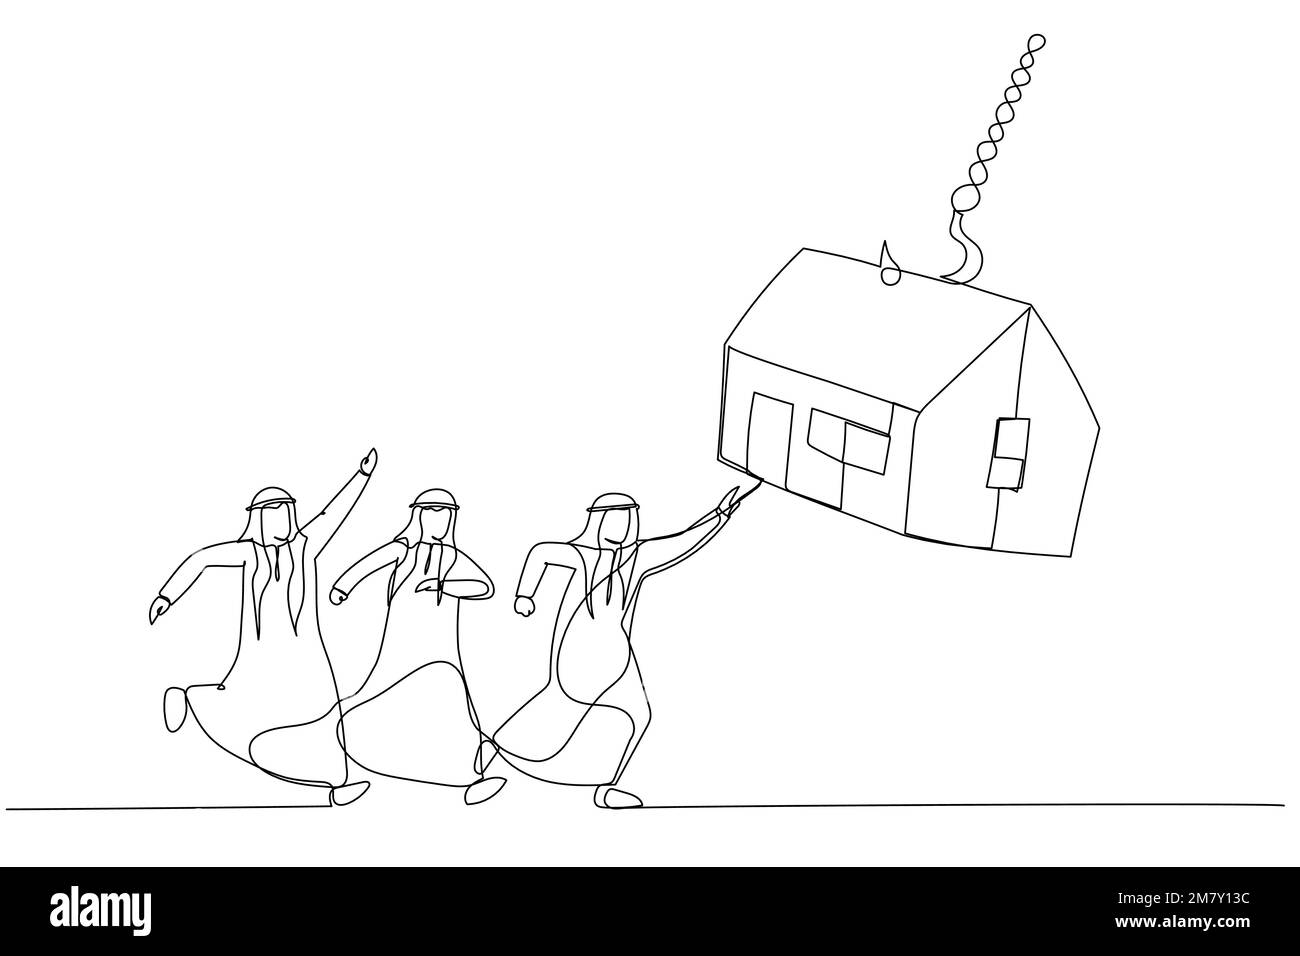 Illustration d'un groupe d'hommes d'affaires arabes qui tentent d'obtenir des appâts de maison sur le crochet de pêche. Un design artistique de style ligne Illustration de Vecteur